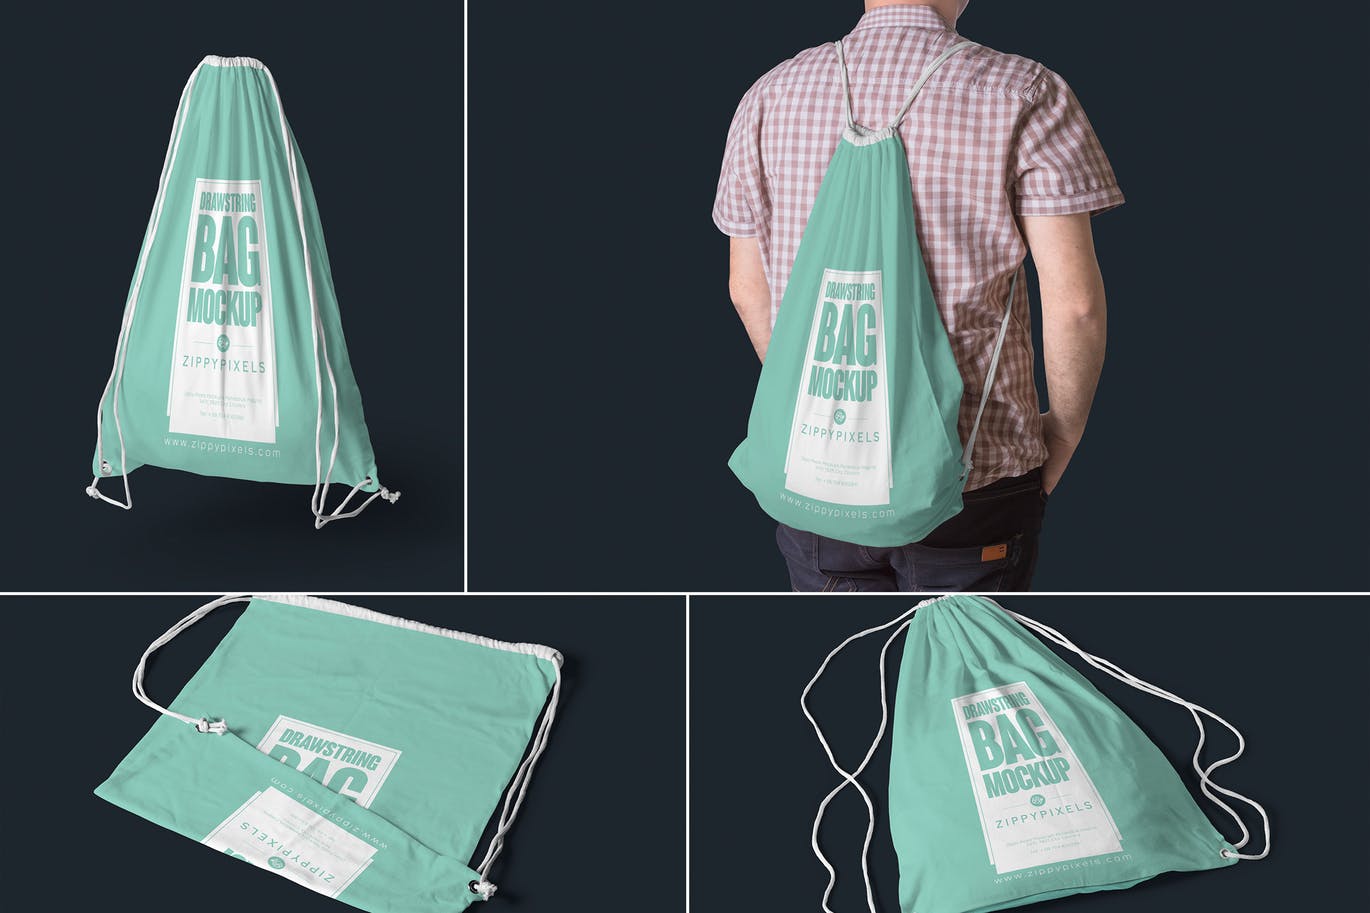 稀有少见的抽绳袋运动袋设计5-drawstring-bag-